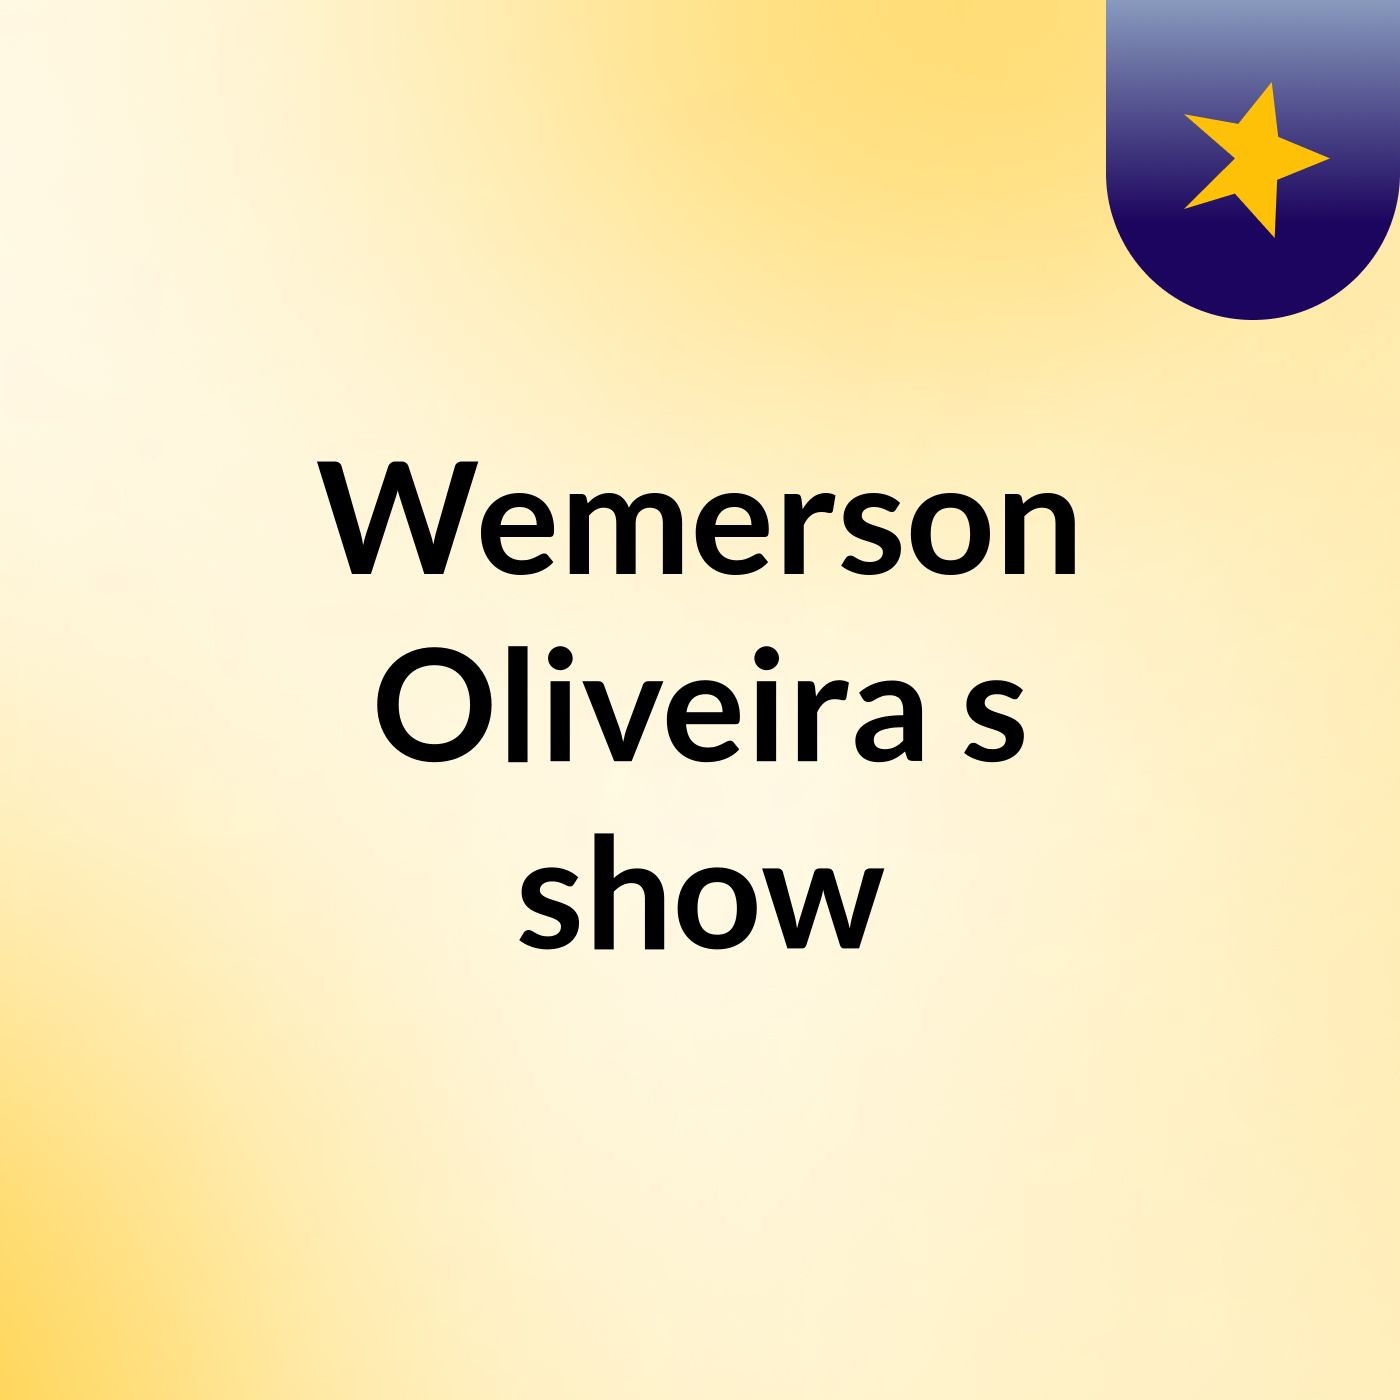 Wemerson Oliveira's show